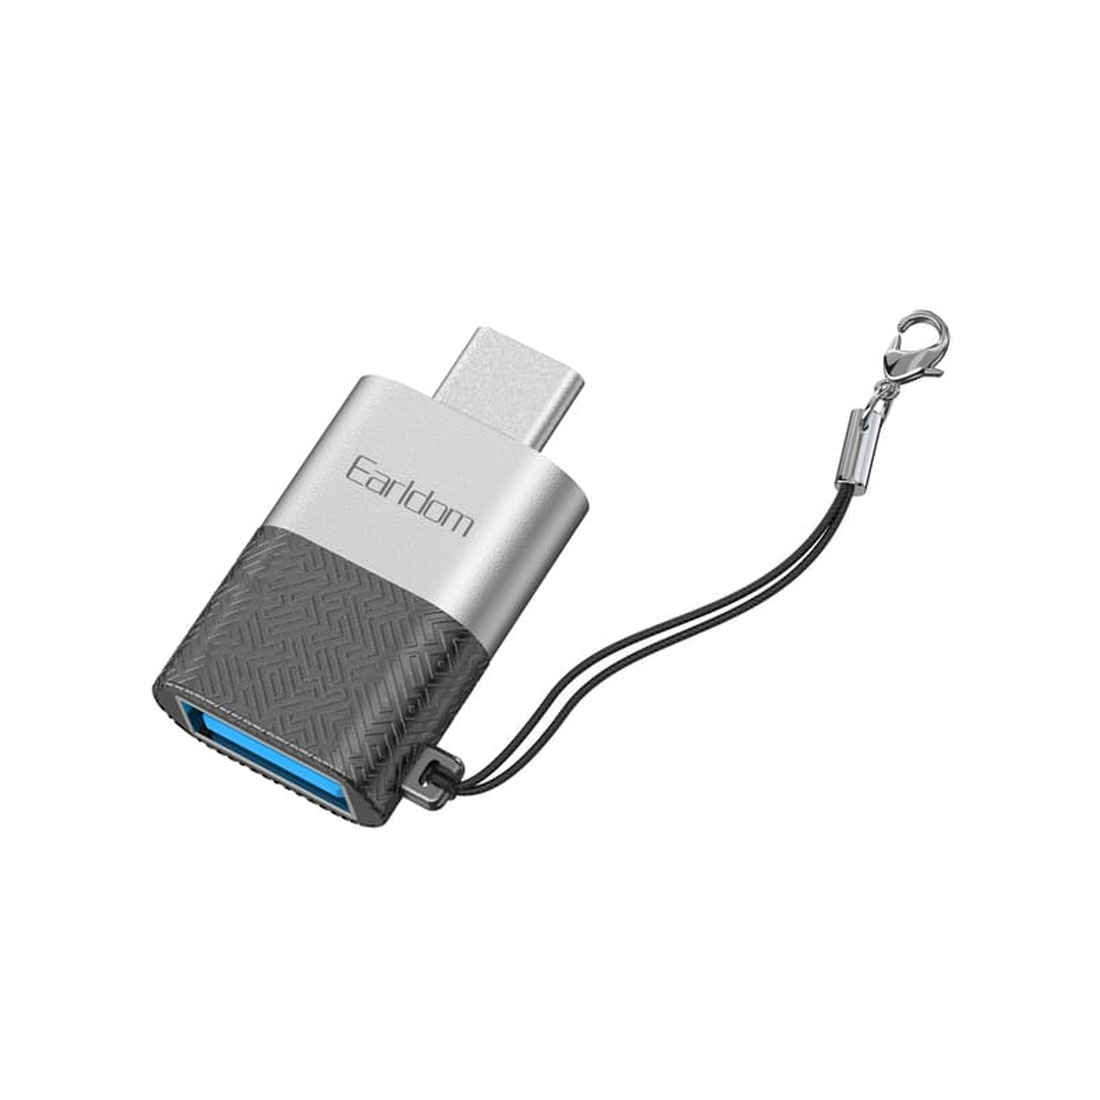 OTG переходник, адаптер EARLDOM ET-OT72 c USB Type C на USB 3.0, цвет черно серебритсый